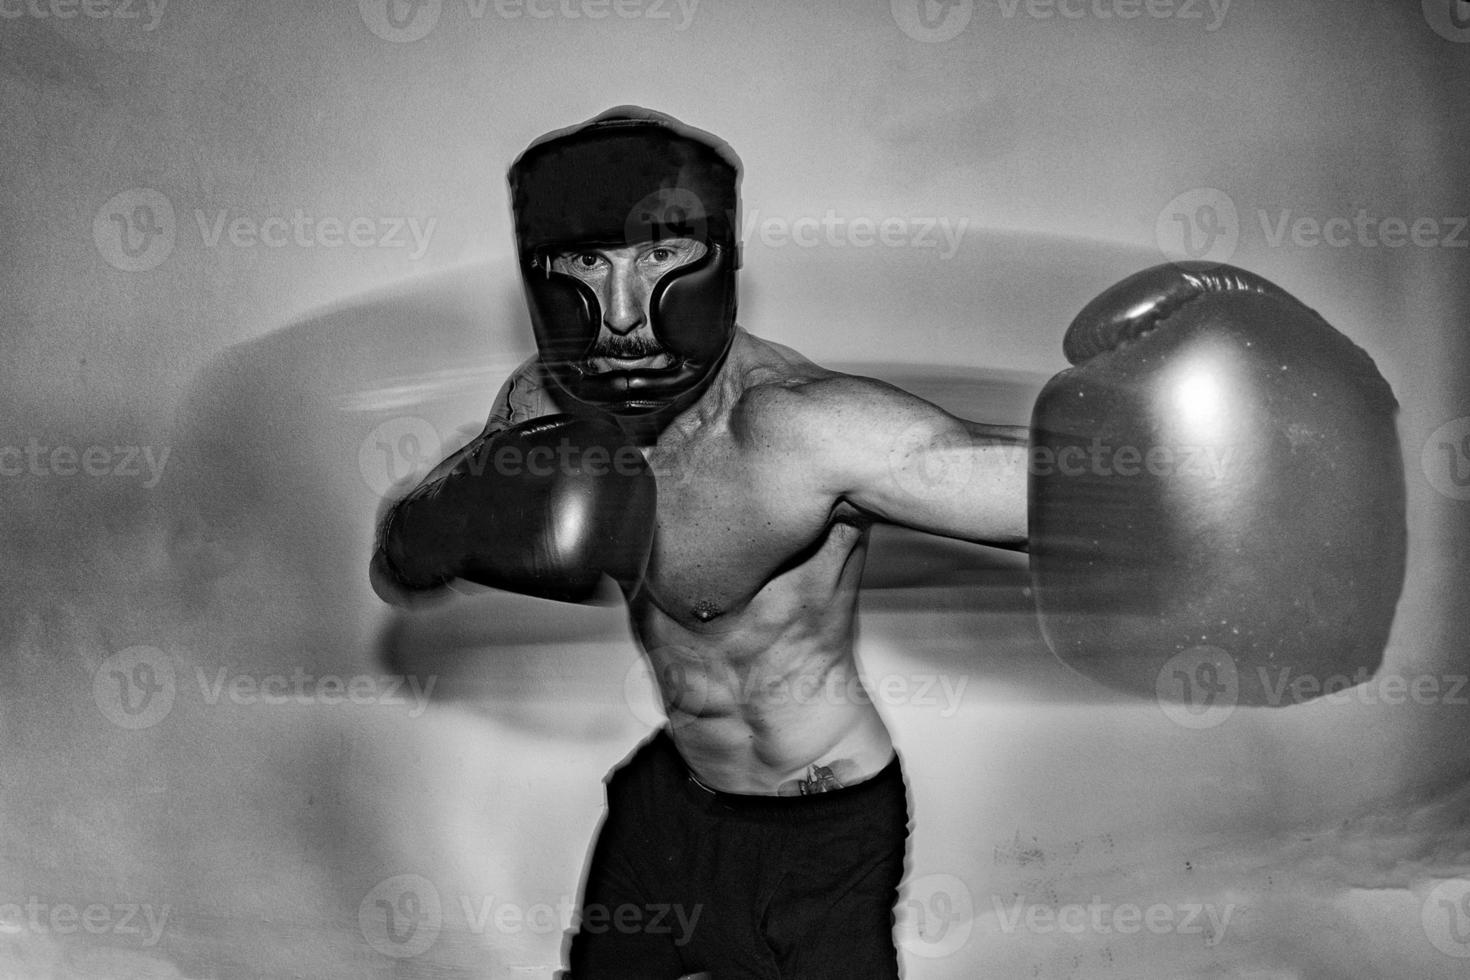 männlicher boxer europäisch beim training foto